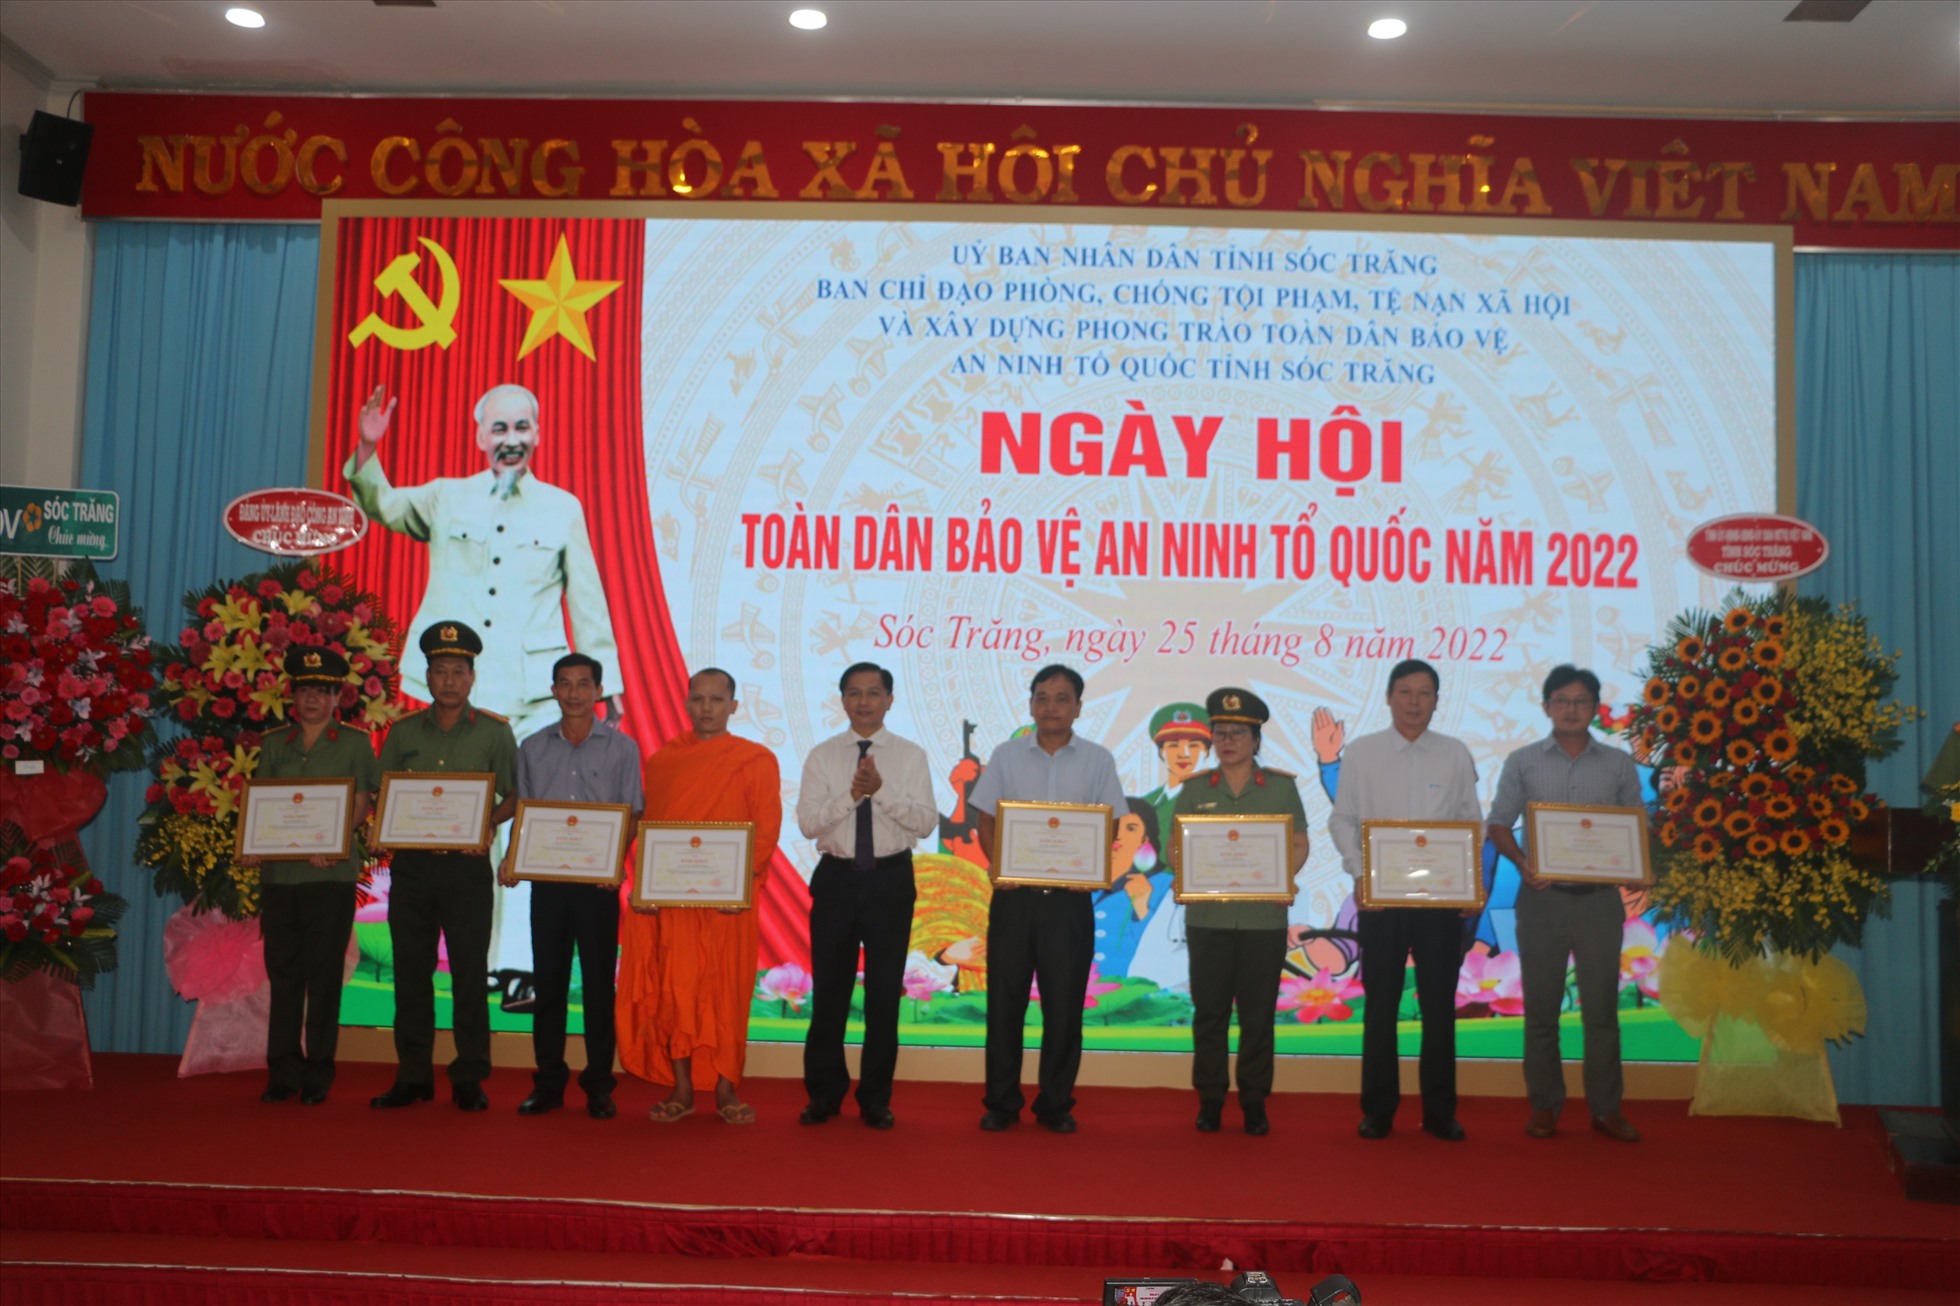 Chủ tịch UBND tỉnh Sóc Trăng Trần Văn Lâu tặng Bằng khen cho các tập thể, cá nhân có nhiều đóng góp công tác đảm bảo an ninh trật tự của địa phương